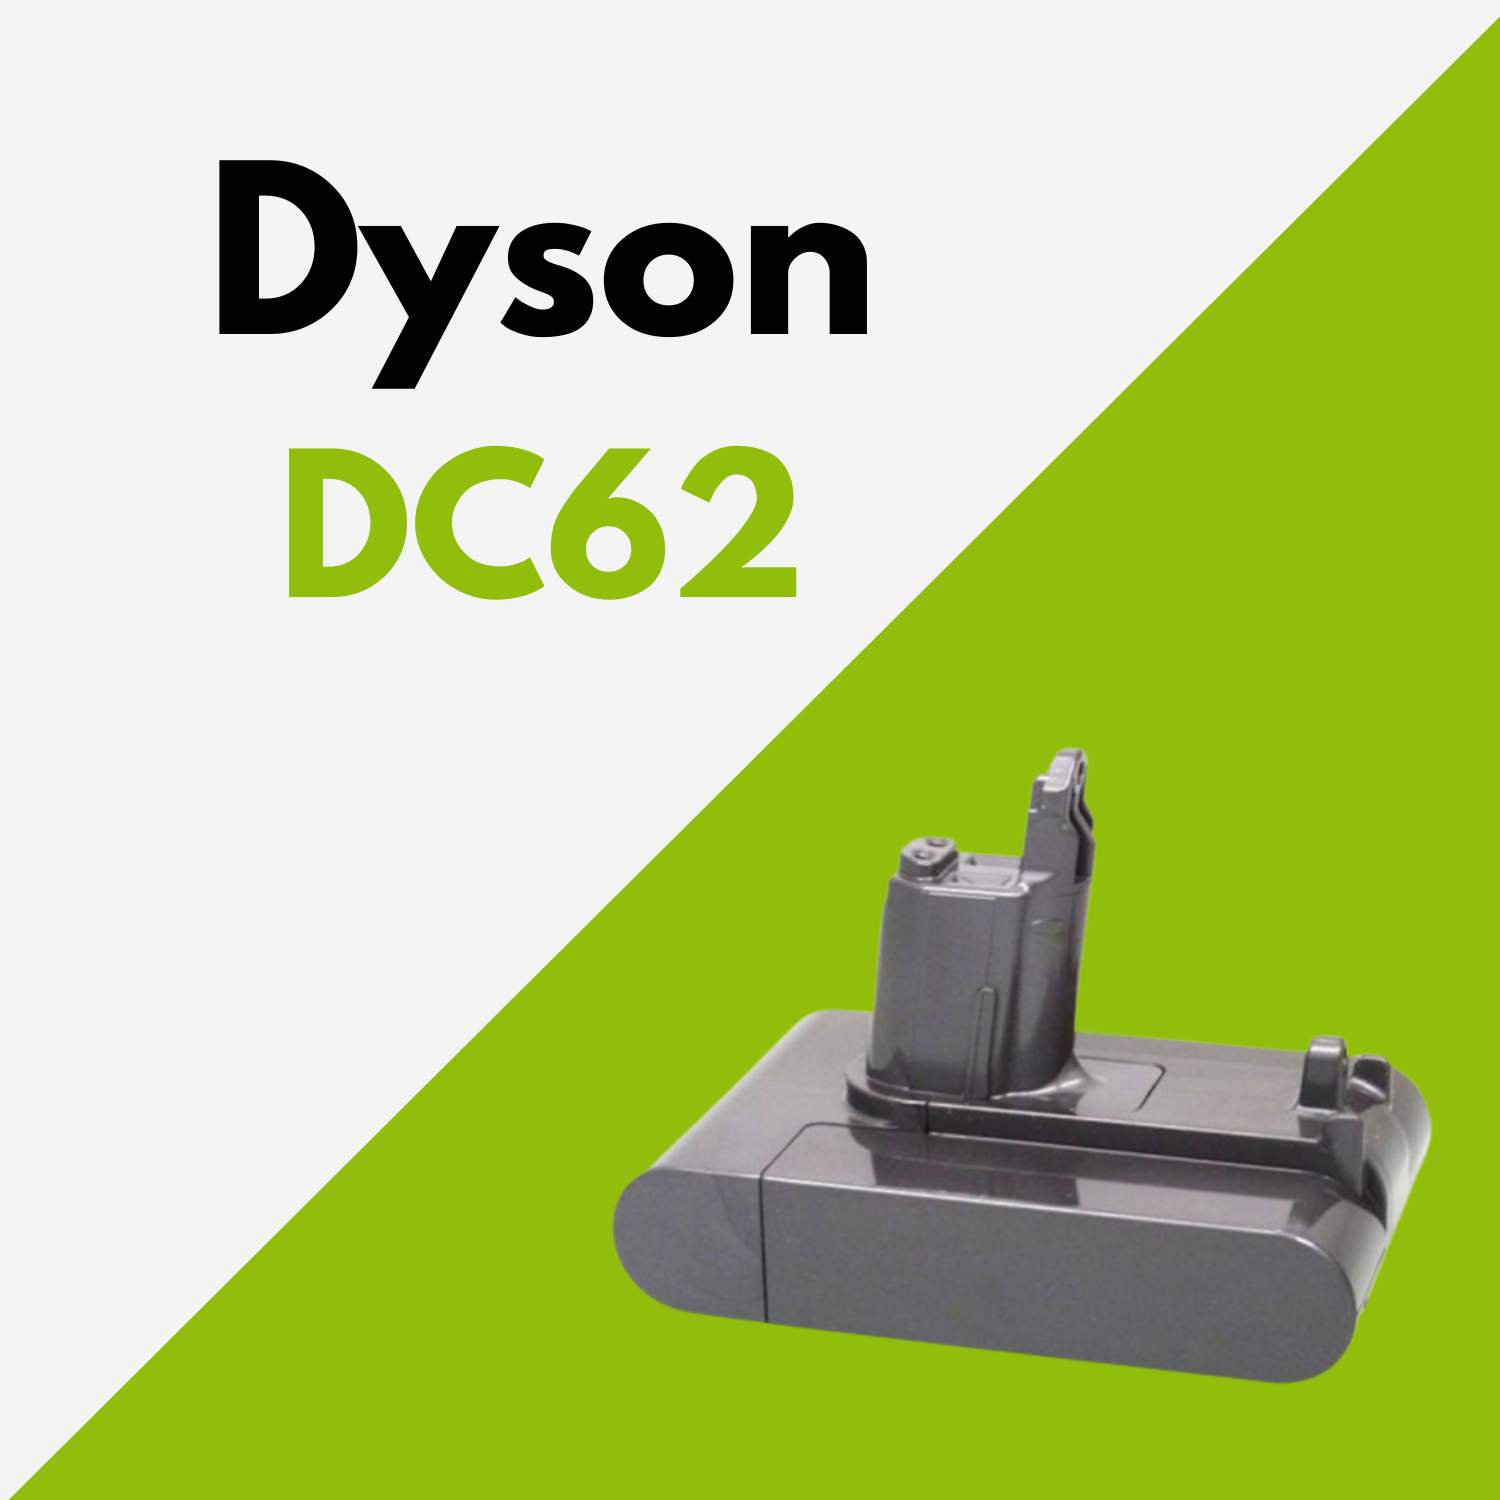 Batterie Dyson DC62 au meilleur prix ! [PROMO]